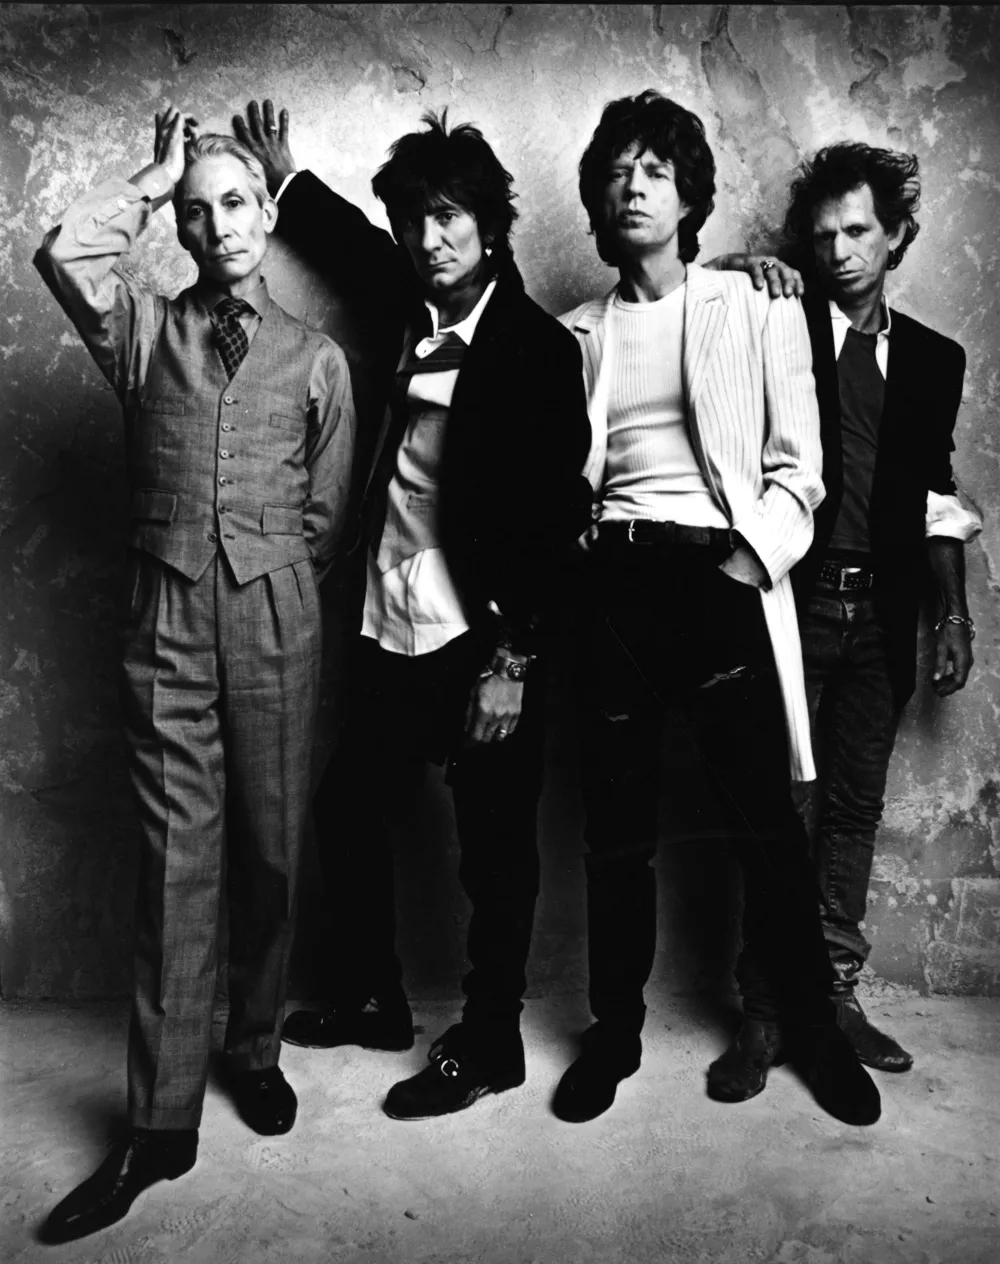 Lyssna på Rolling Stones nya singel här